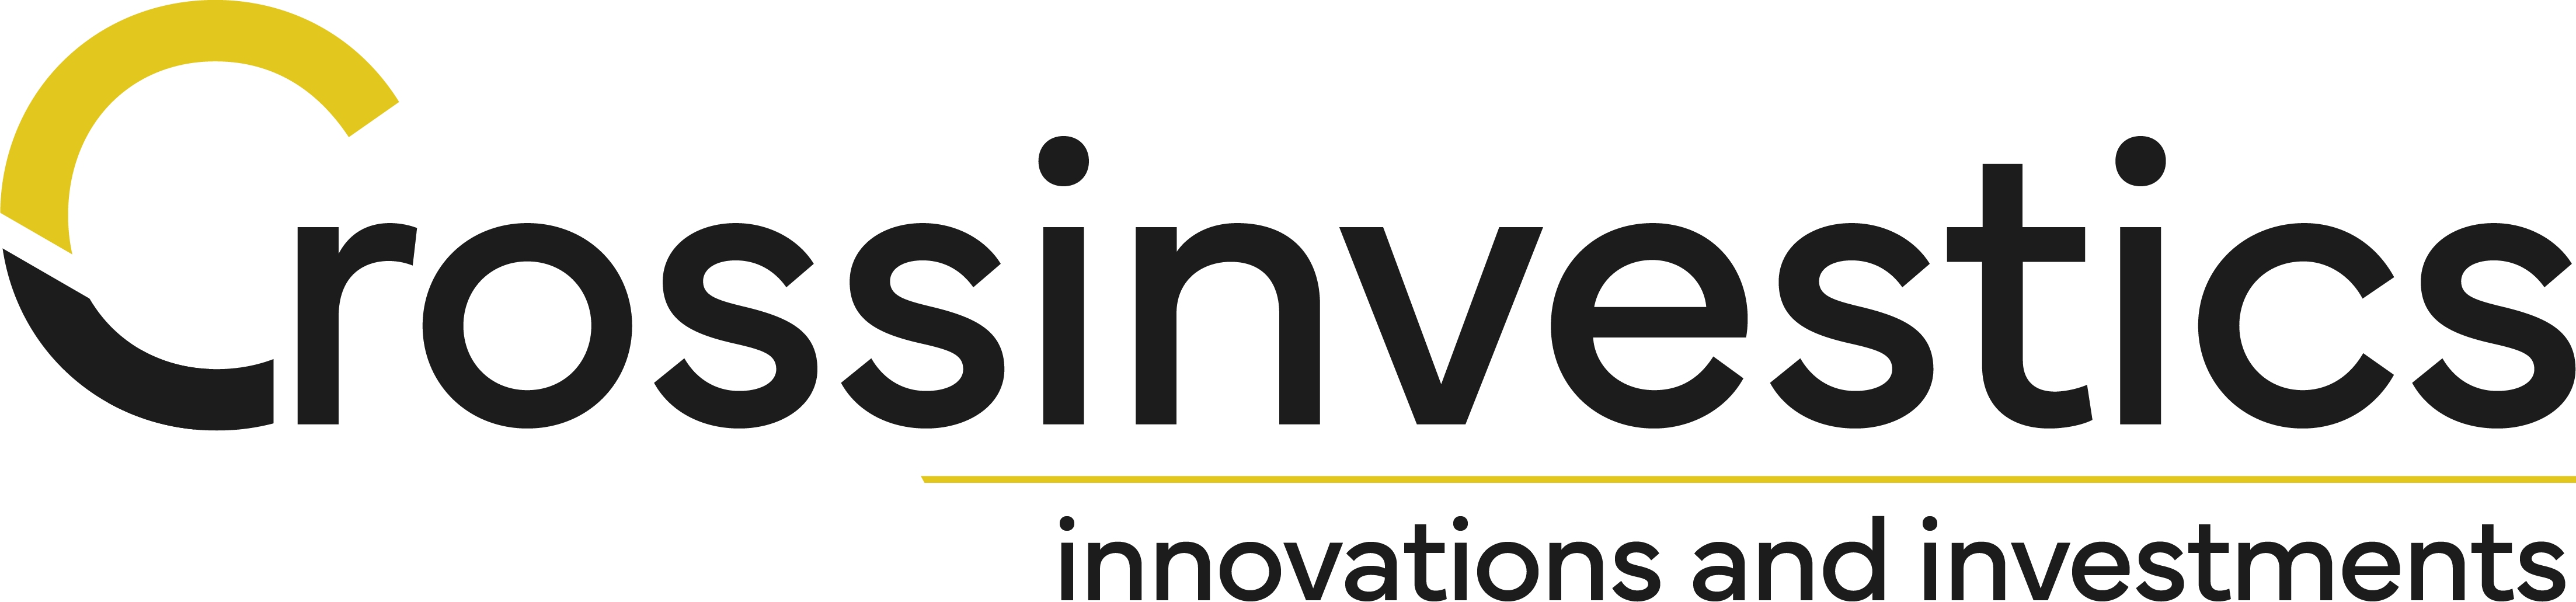 Logo der Crossinvestics investments GmbH